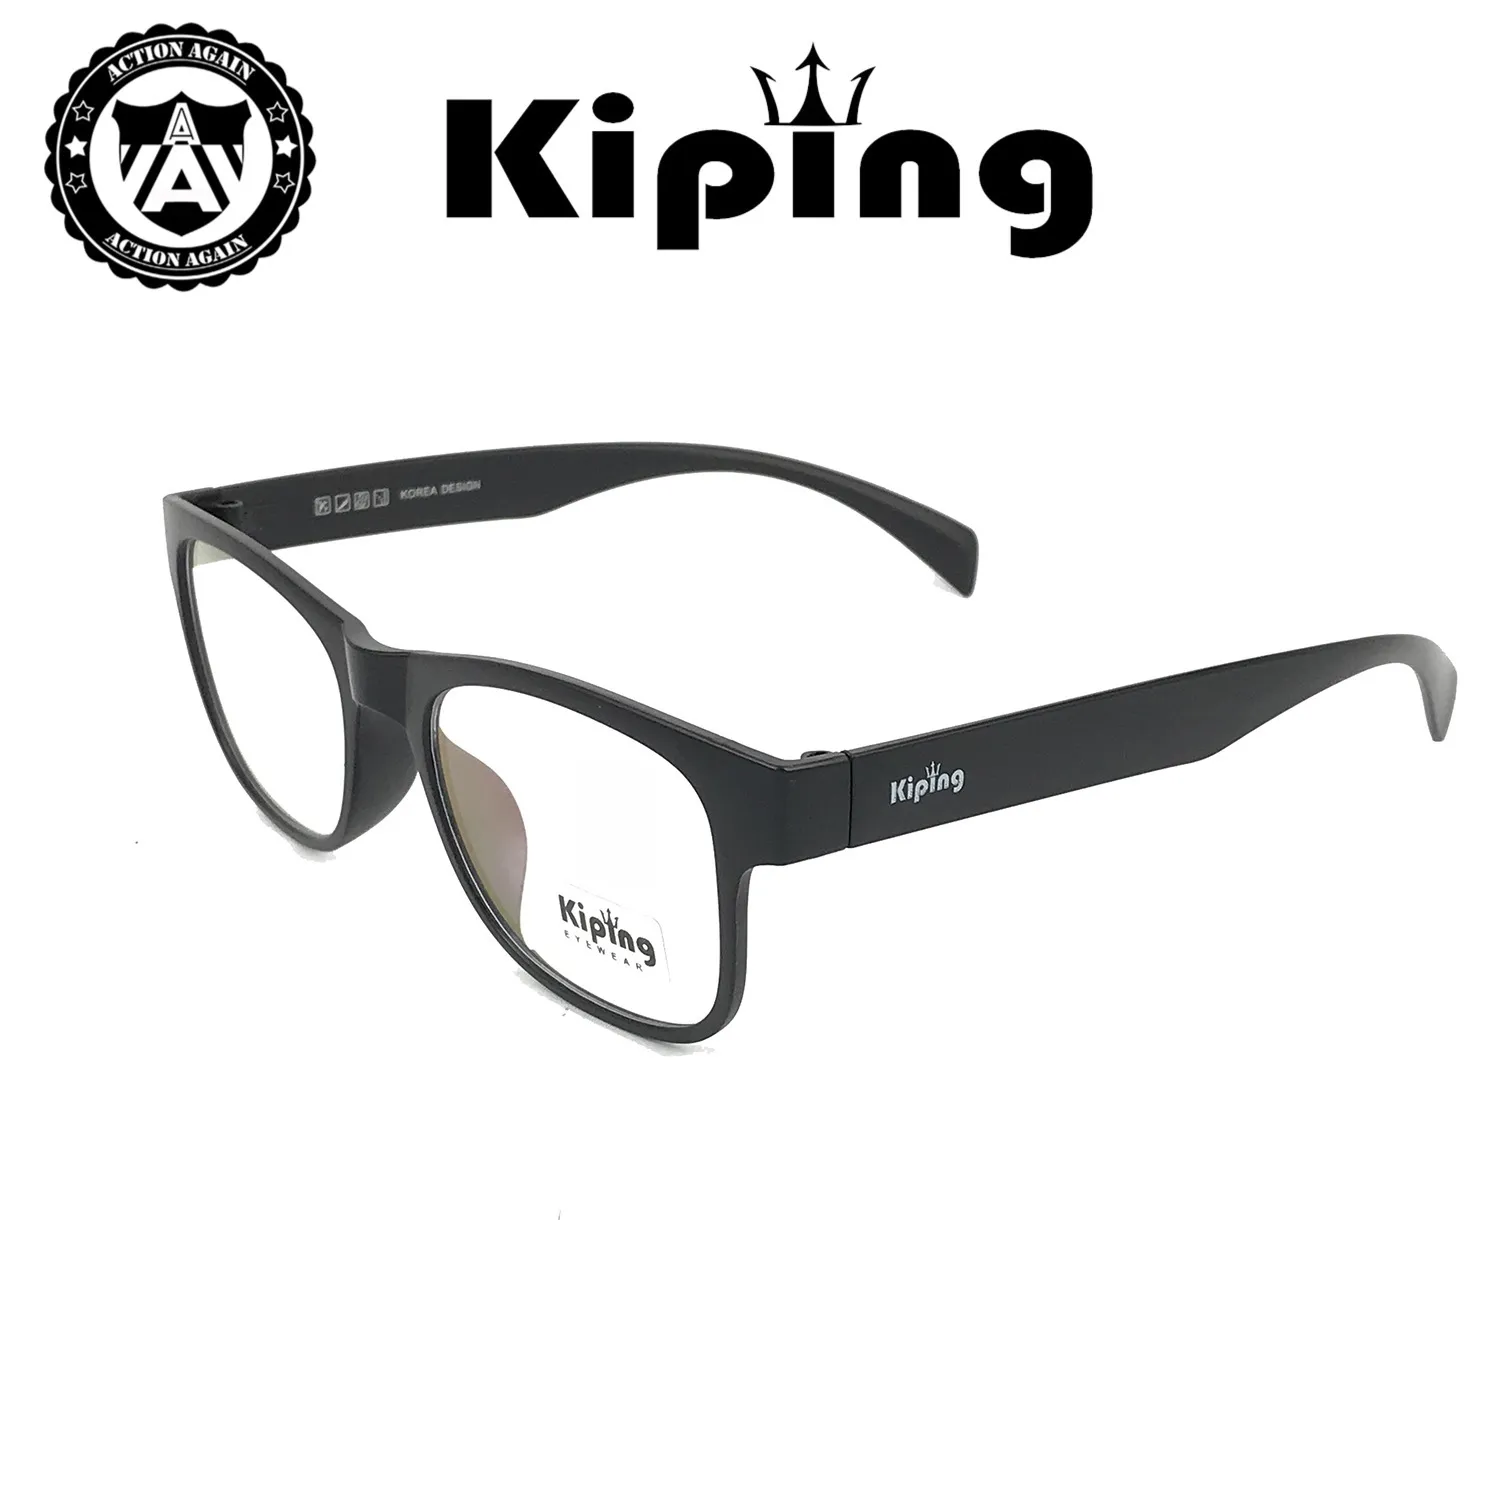 KIPING 99246 แว่นสายตา แว่นกรองแสงฟ้า แว่นตากรองแสง แฟชั่นล่าสุด แว่นตา แฟชั่น เต็มเฟรม แว่นตาราคาถูก